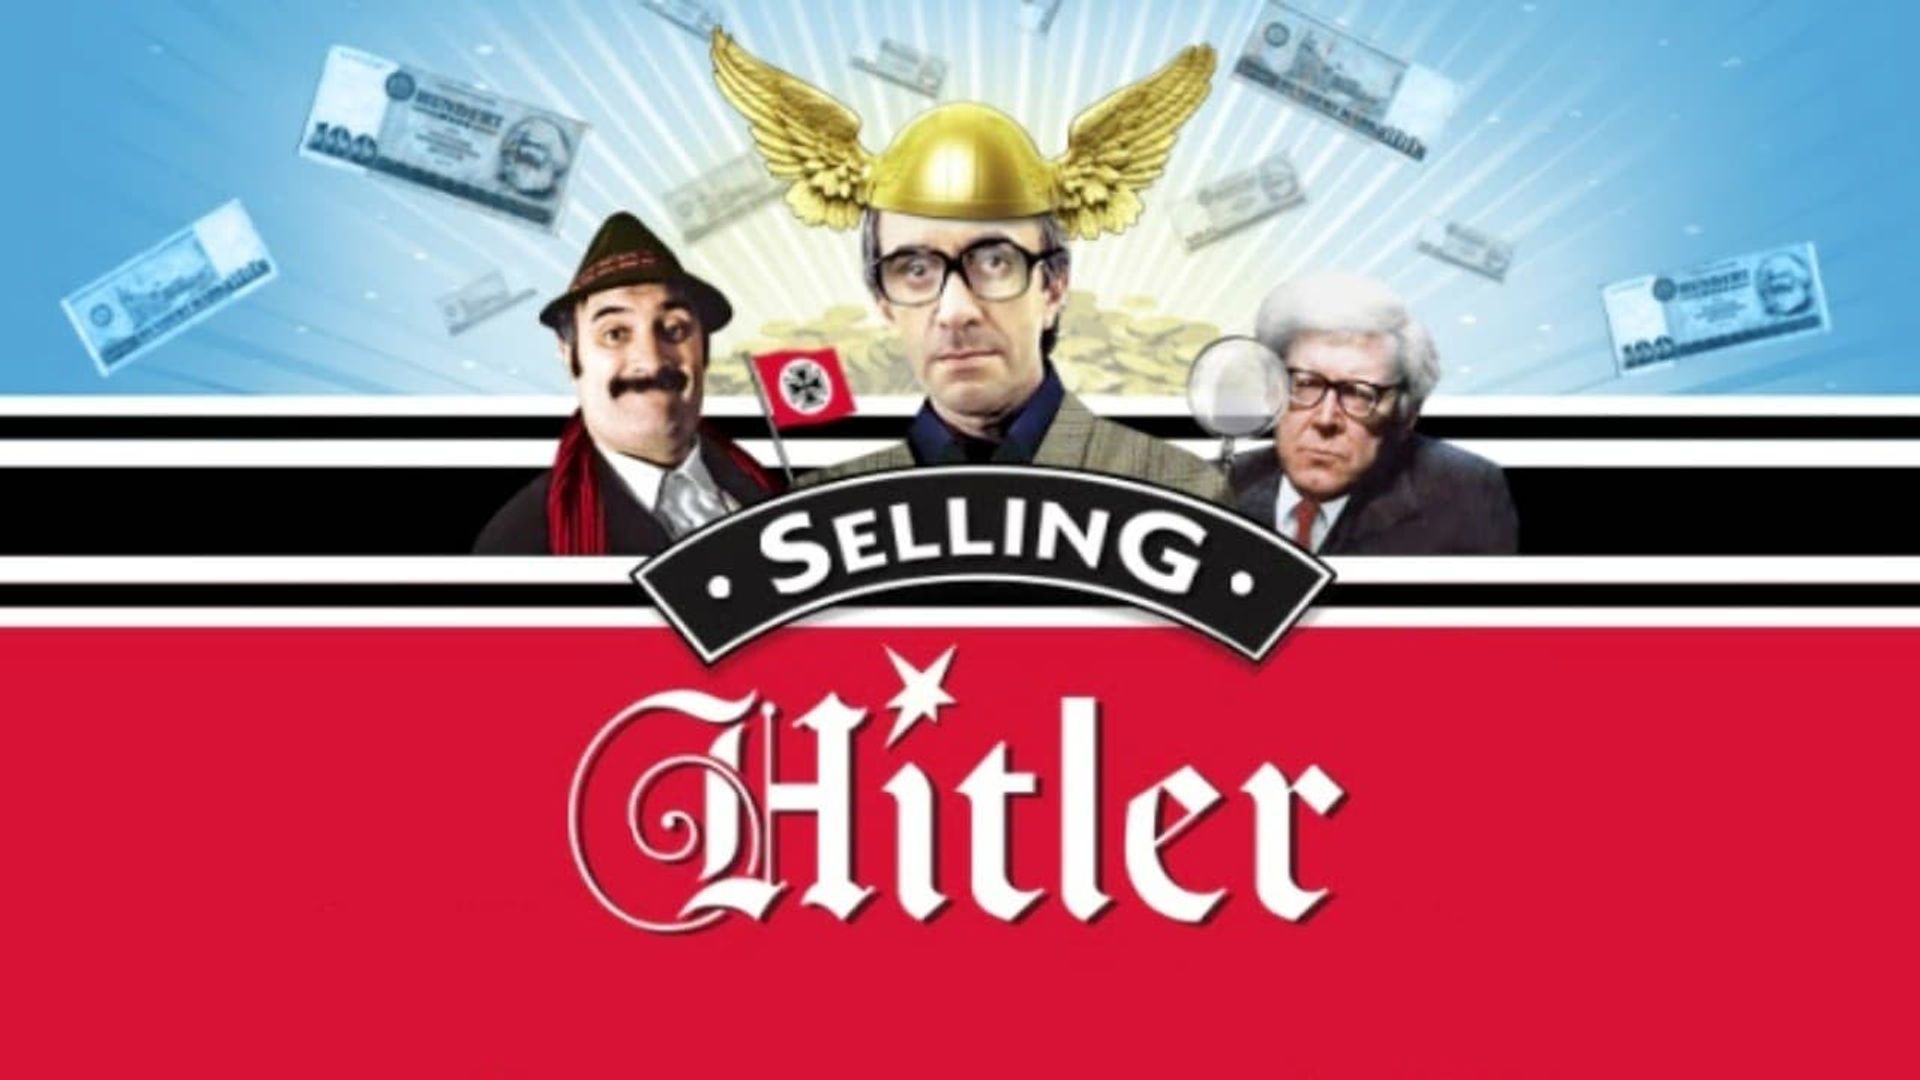 Selling Hitler background